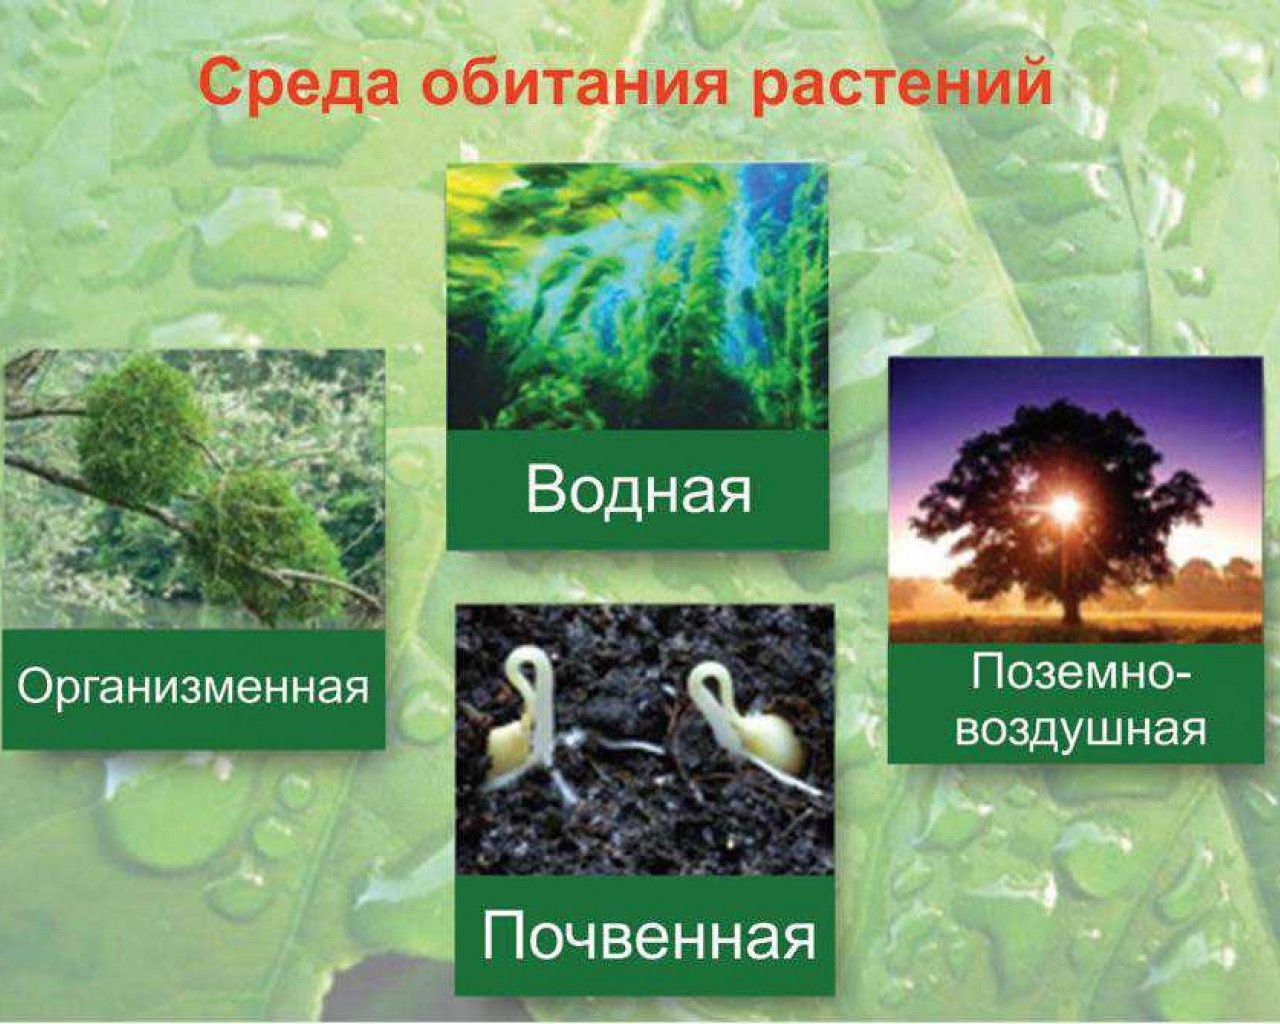 Среда обитания растений. Условия обитания растений. Условия среды обитания растений. Растения разных сред обитания.